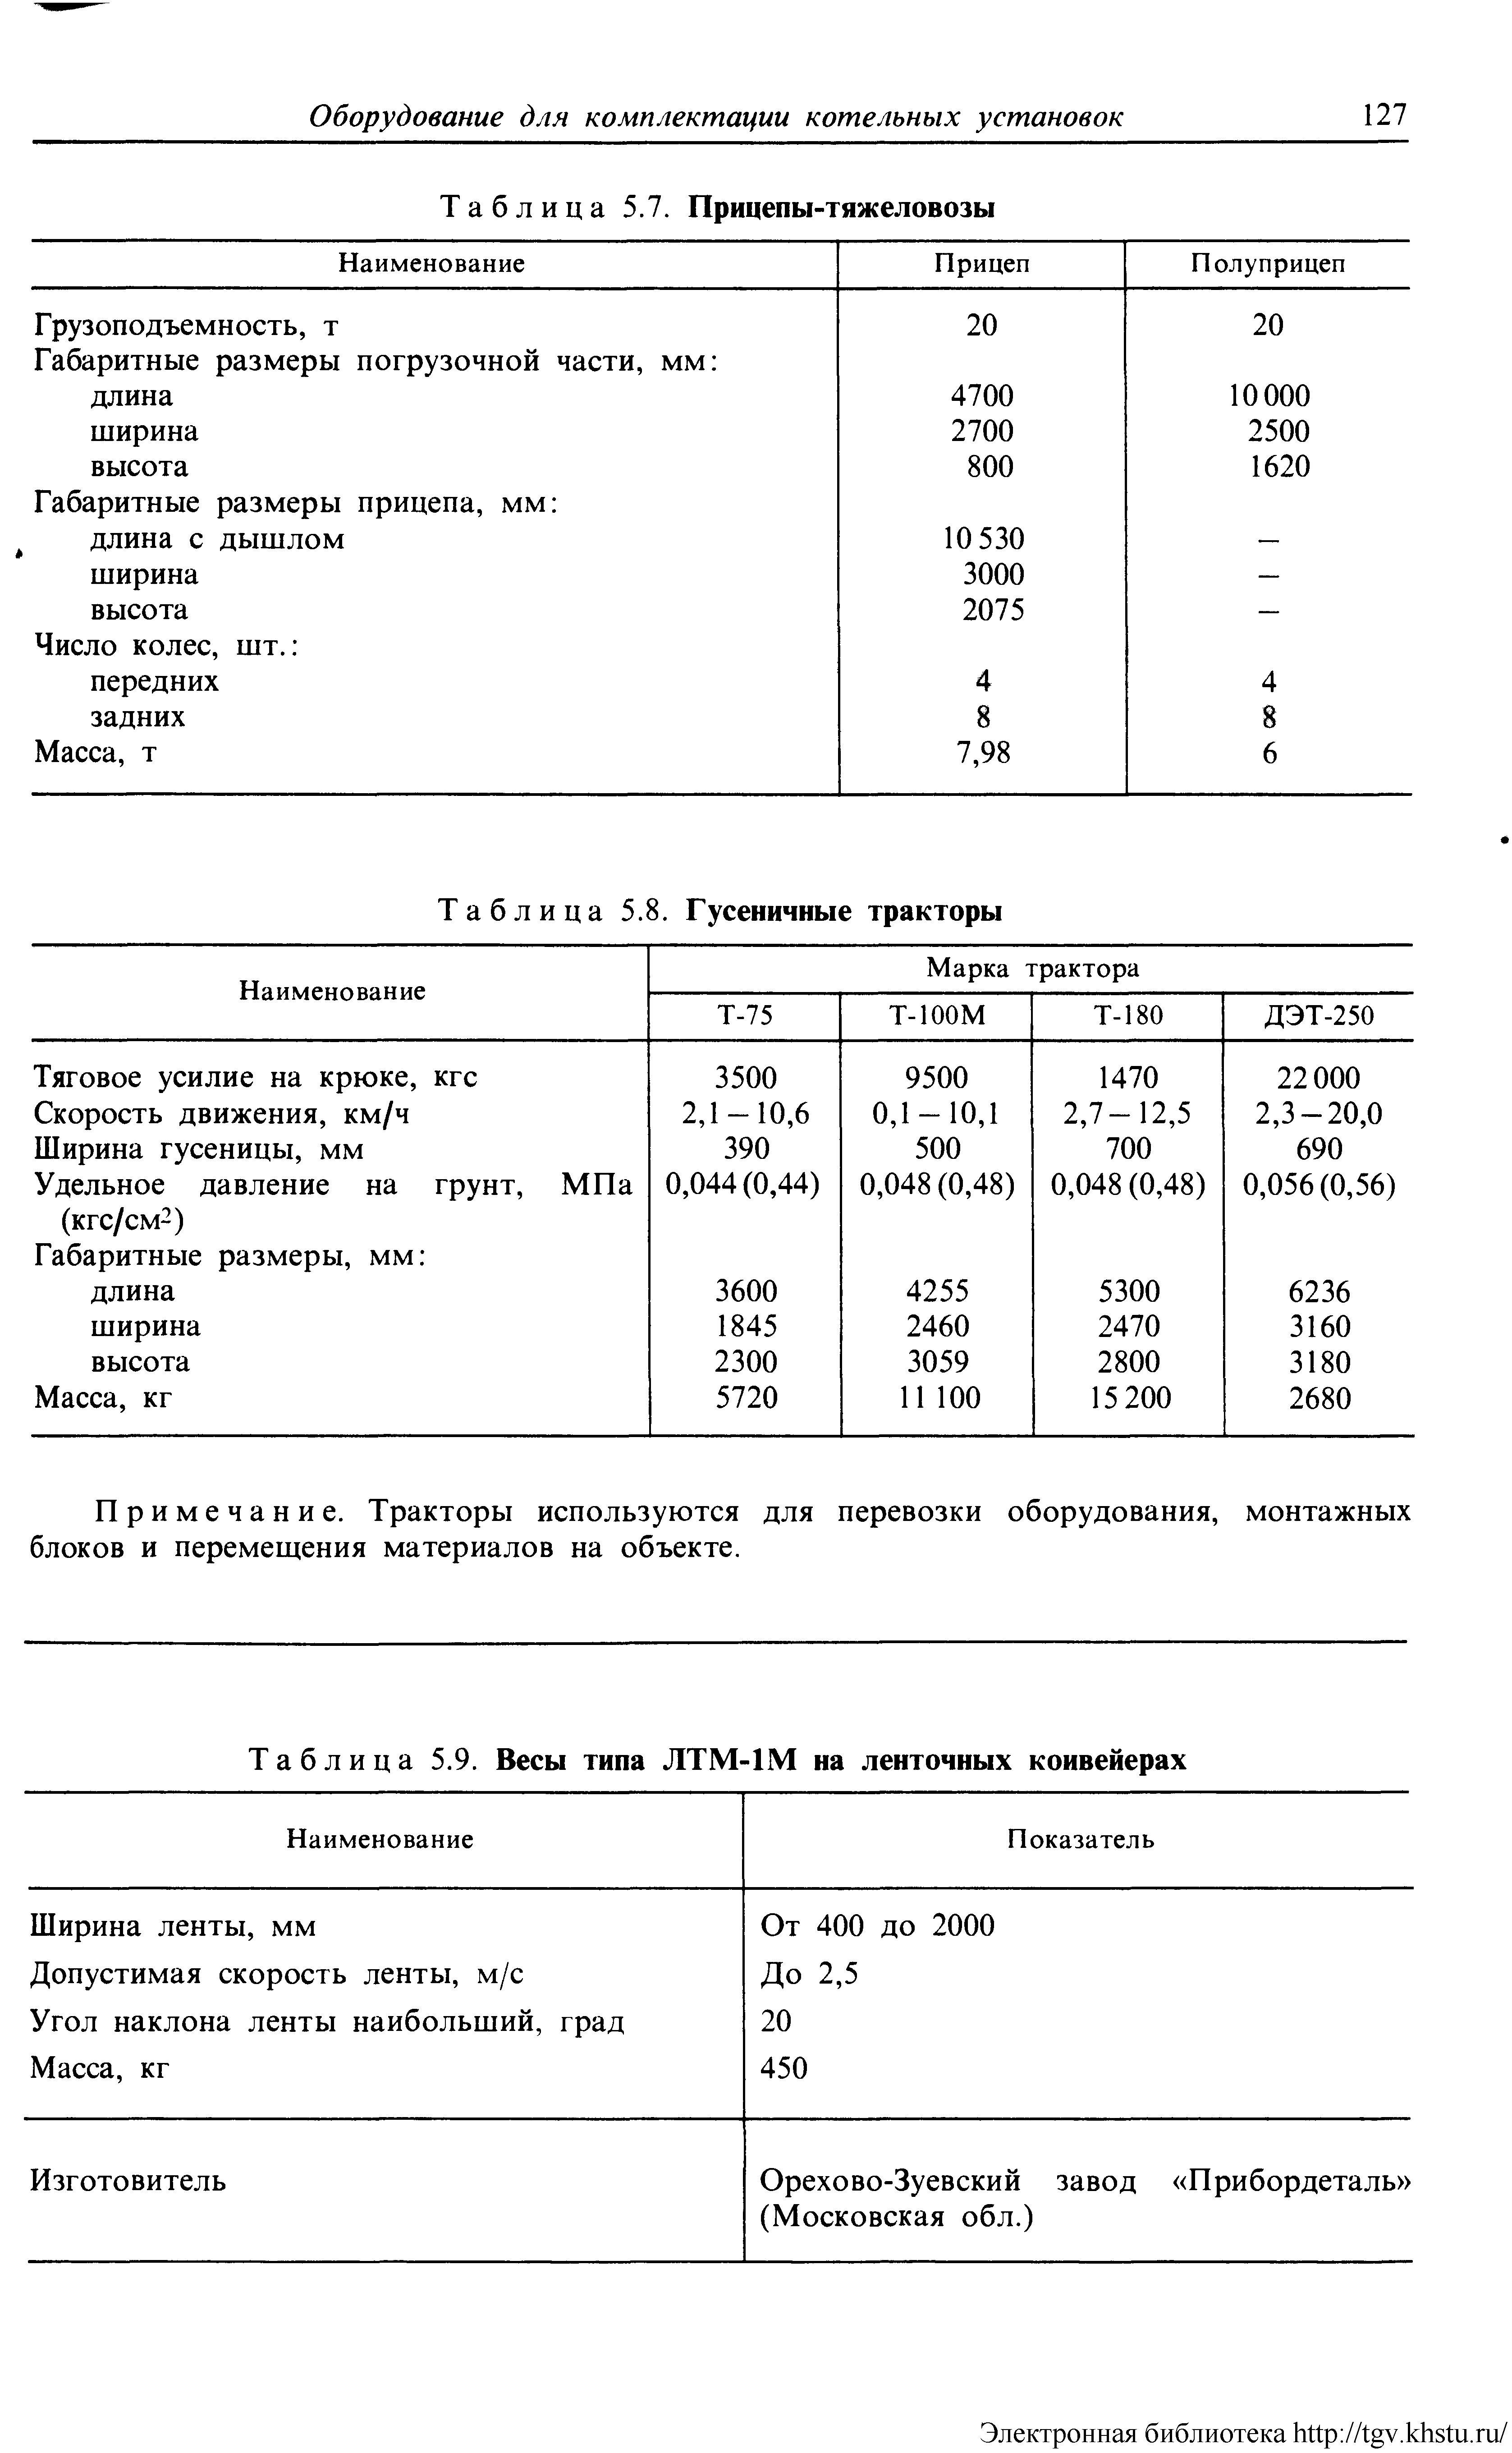 Таблица 5.9. Весы типа ЛТМ-1М на ленточных конвейерах
